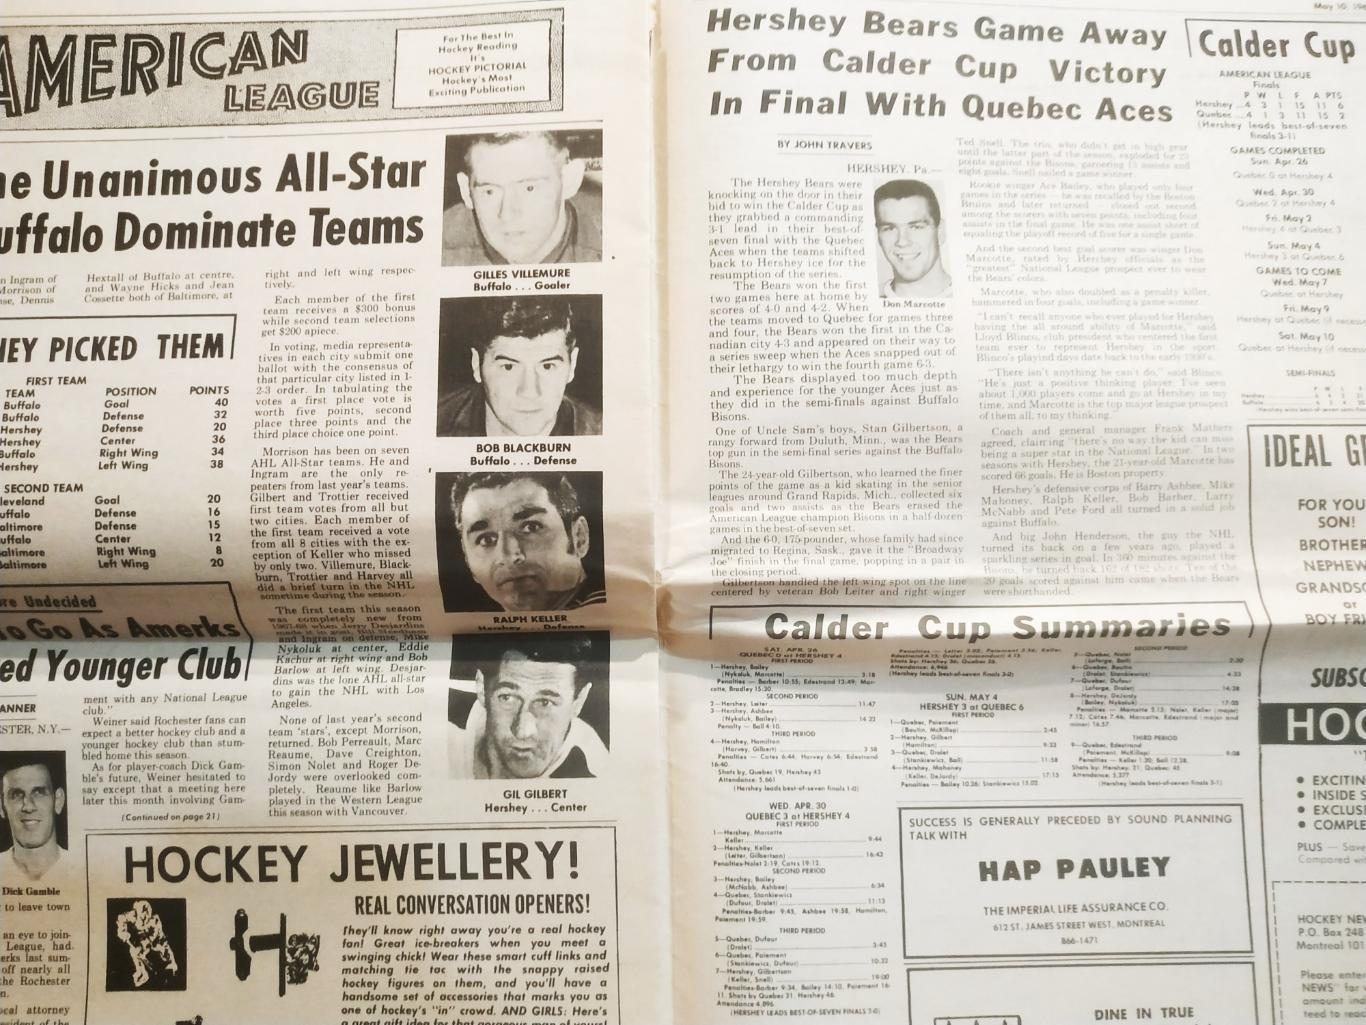 ХОККЕЙ ЖУРНАЛ ЕЖЕНЕДЕЛЬНИК НХЛ НОВОСТИ ХОККЕЯ NHL MAY 10 1969 THE HOCKEY NEWS 3